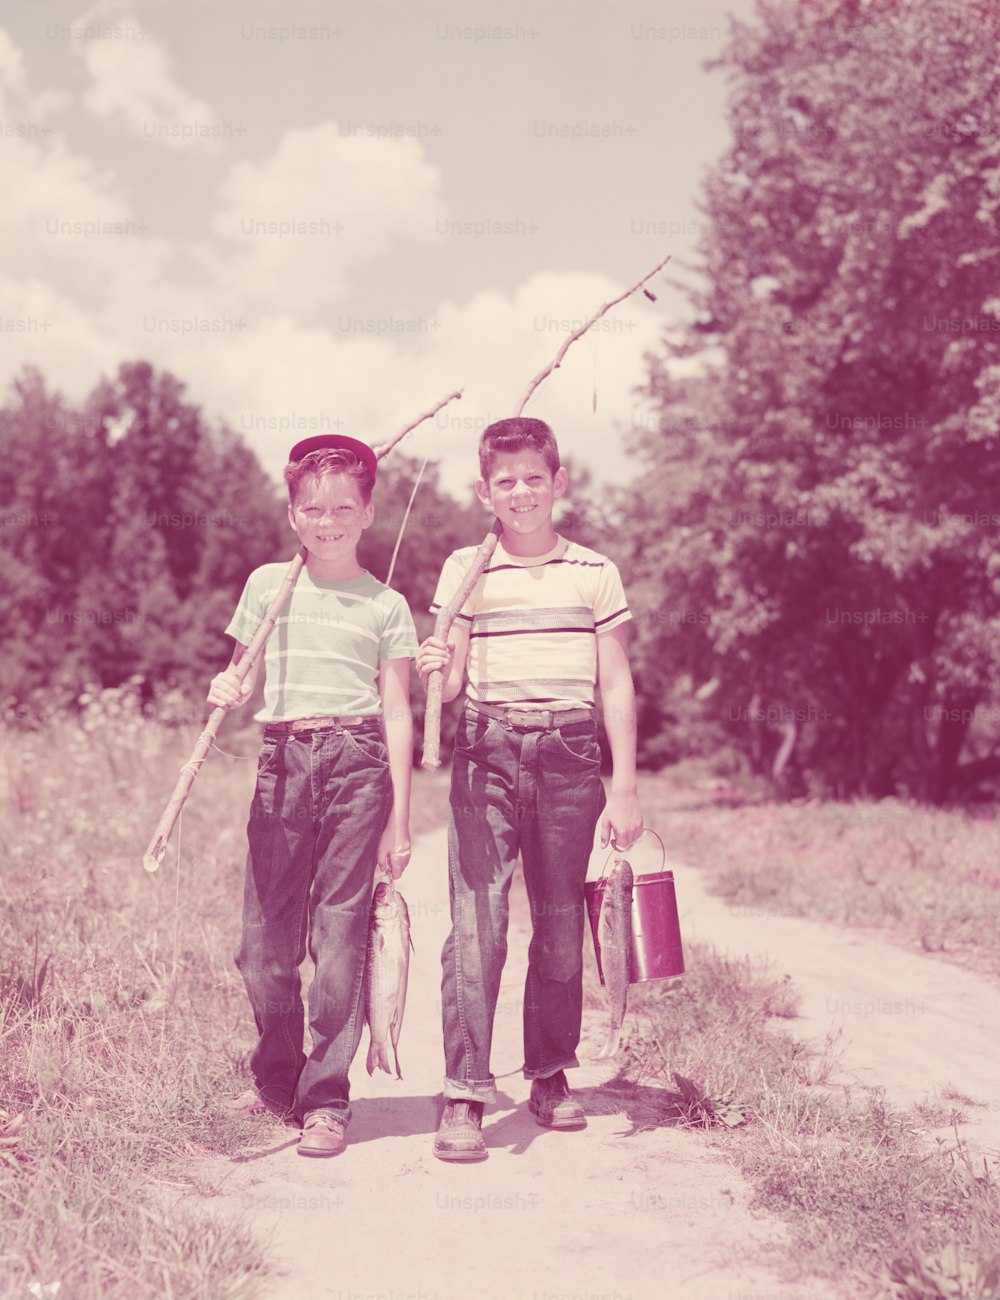 ESTADOS UNIDOS - Alrededor de la década de 1950: Dos niños caminando por la calle, cargando cañas de pescar ramitas.